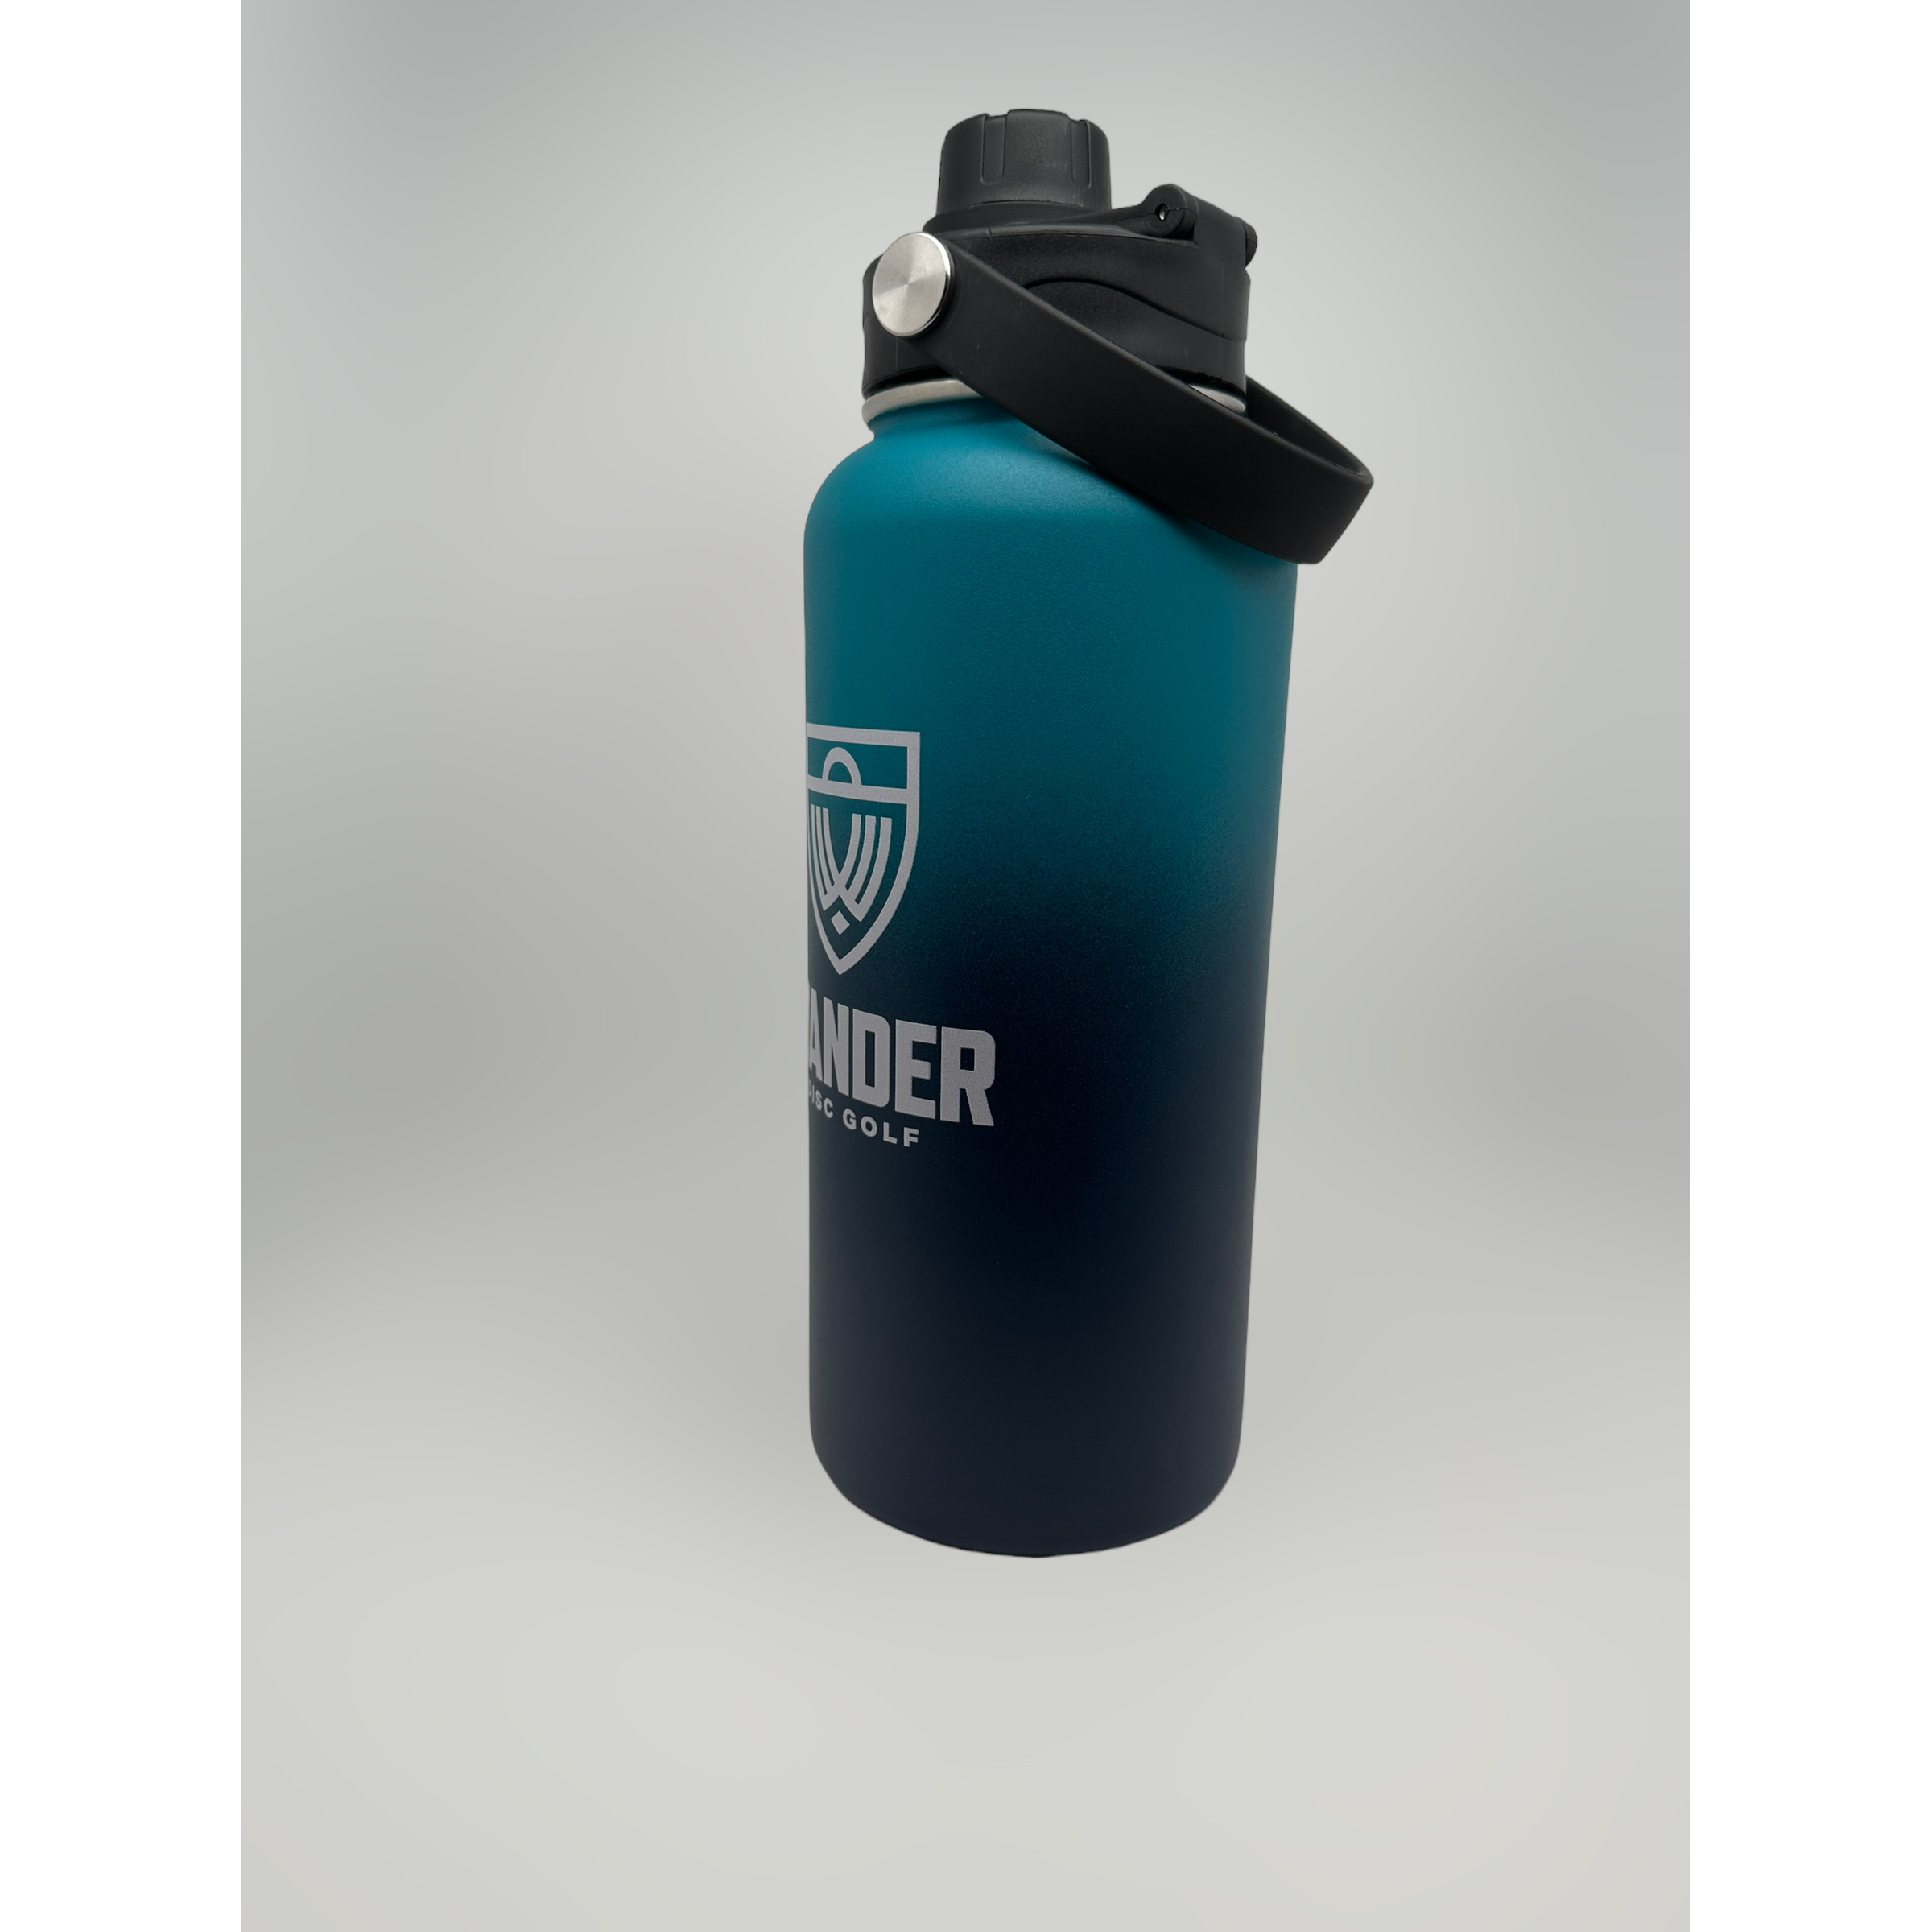 Wander 32oz Insulated Water Bottle – Wander Disc Golf